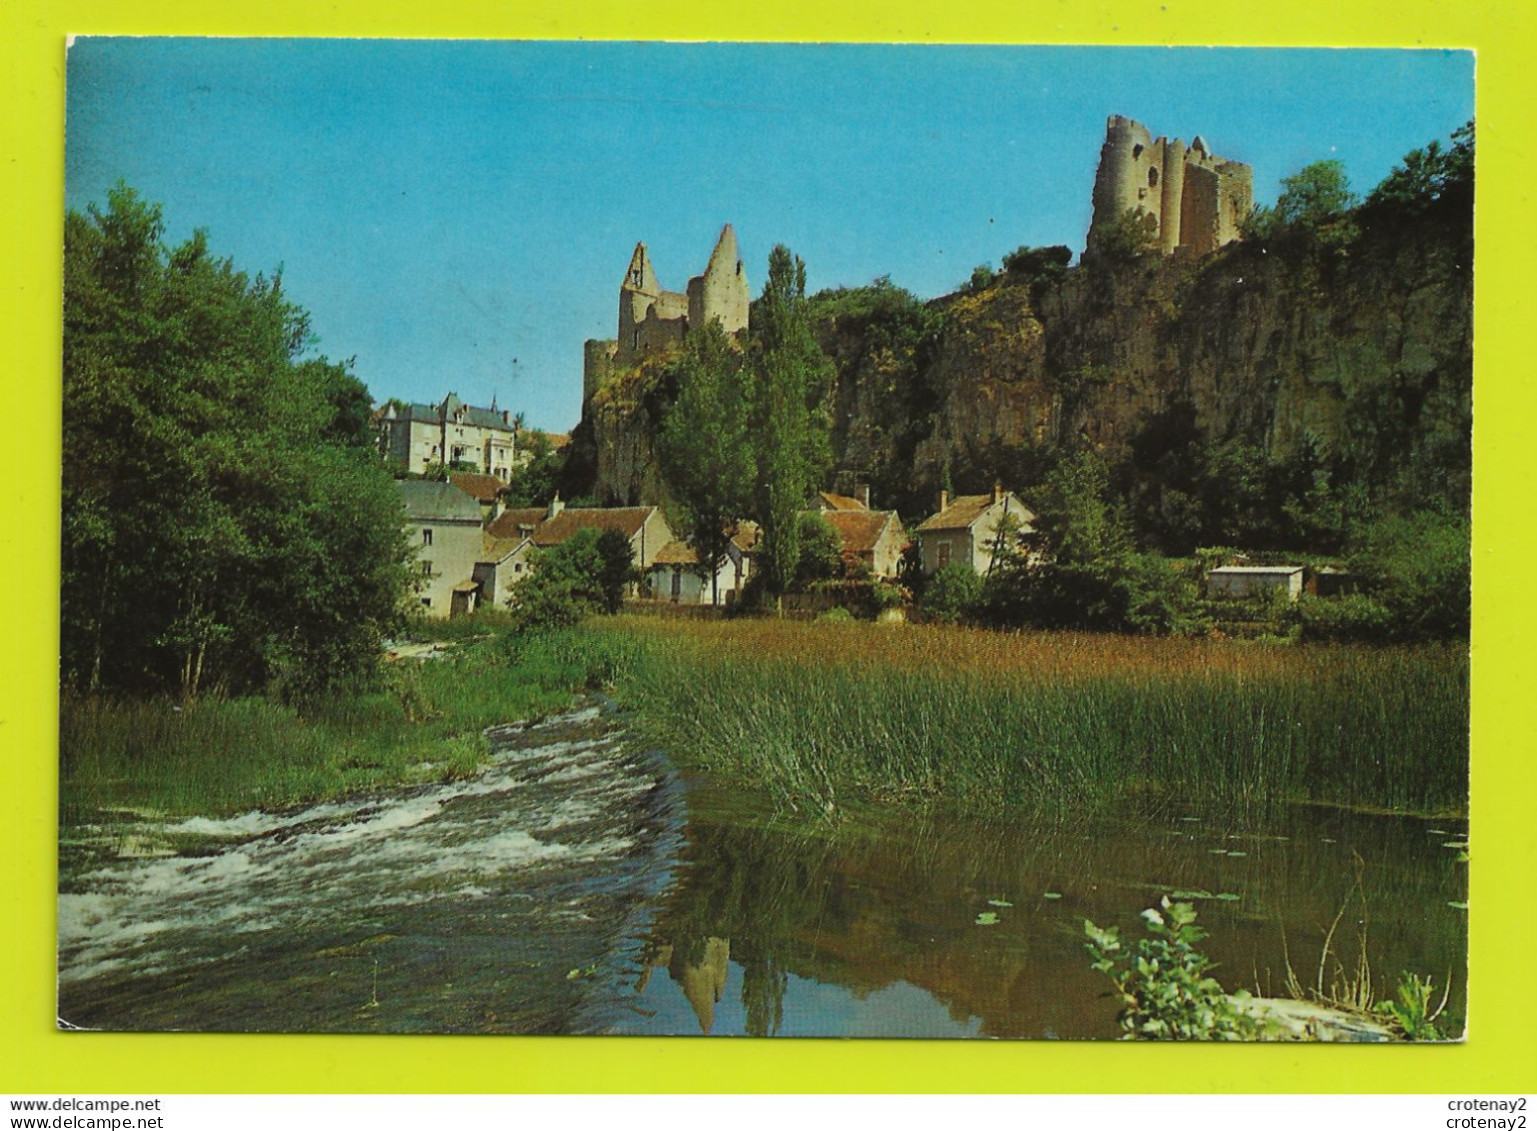 86 ANGLES SUR L'ANGLIN Vers St Savin N°4 L'Anglin Et Les Ruines Du Château VOIR DOS Postée De 36 Fontgombault  En 1970 - Saint Savin